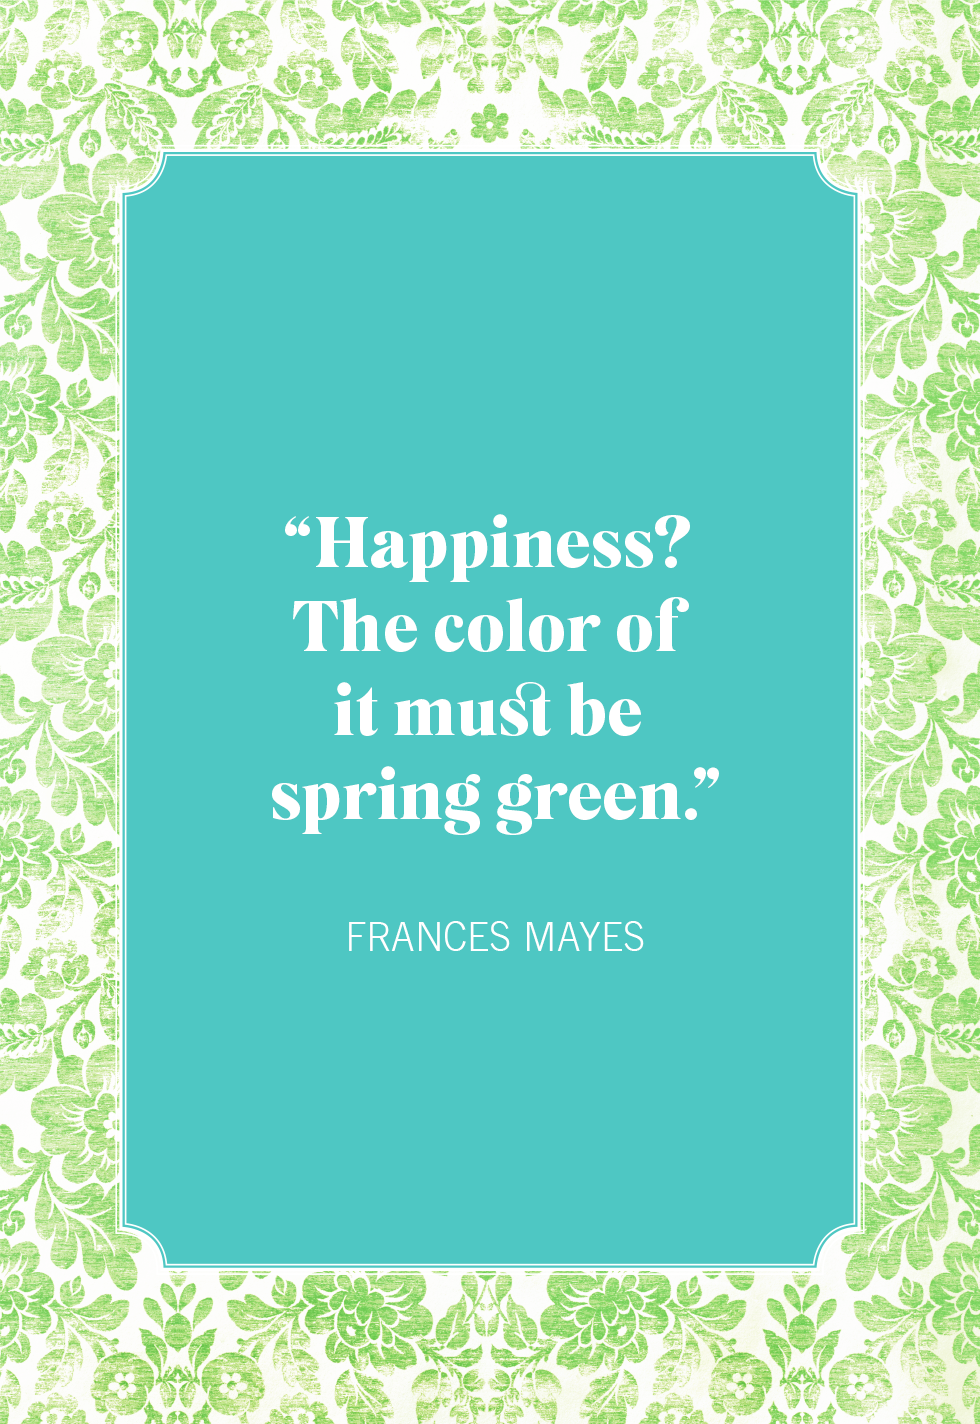 happy spring break quotes